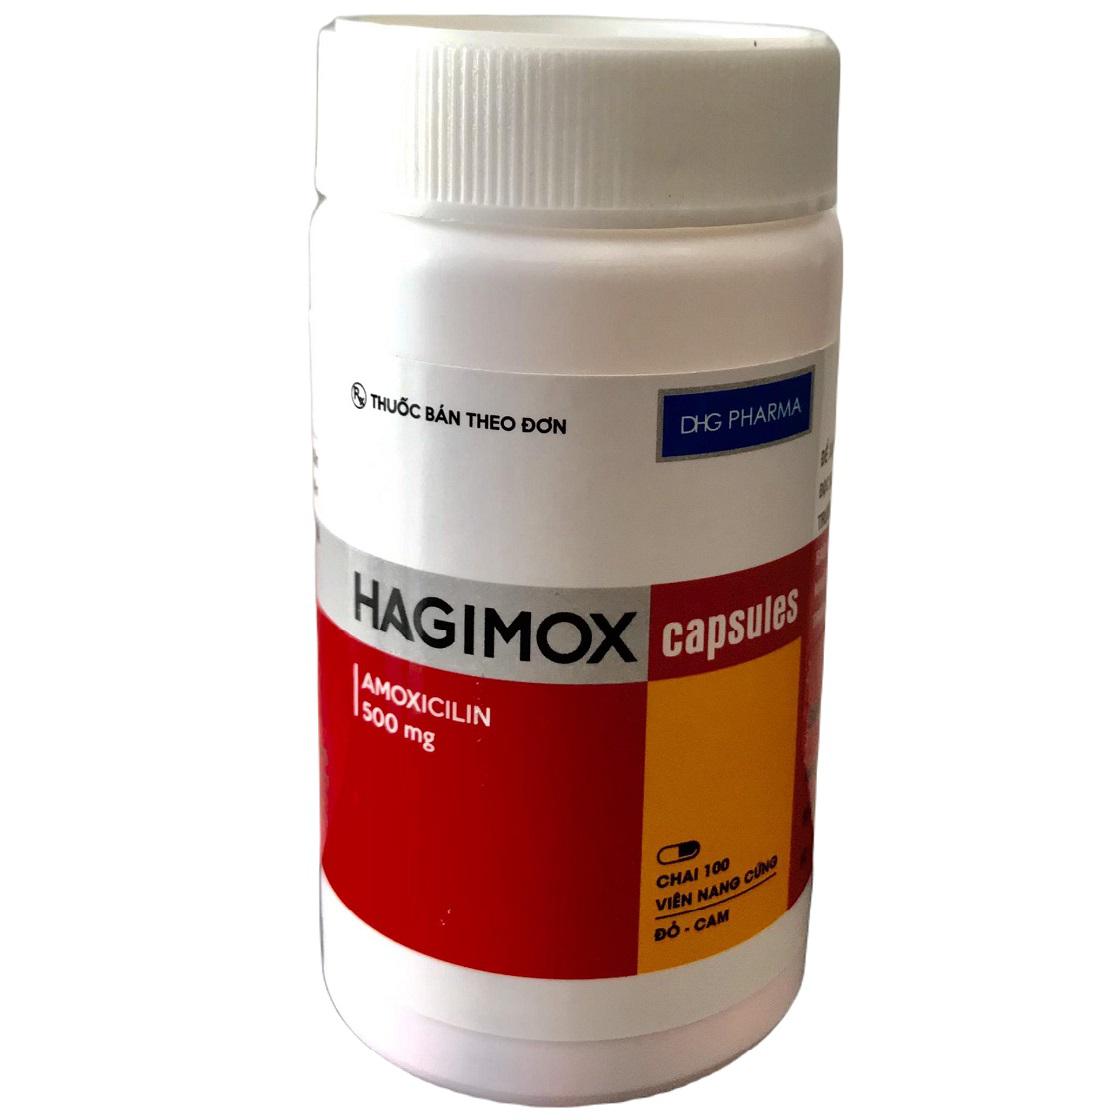 Hagimox (Amoxicilin) 500mg DHG Pharma (C/100v)